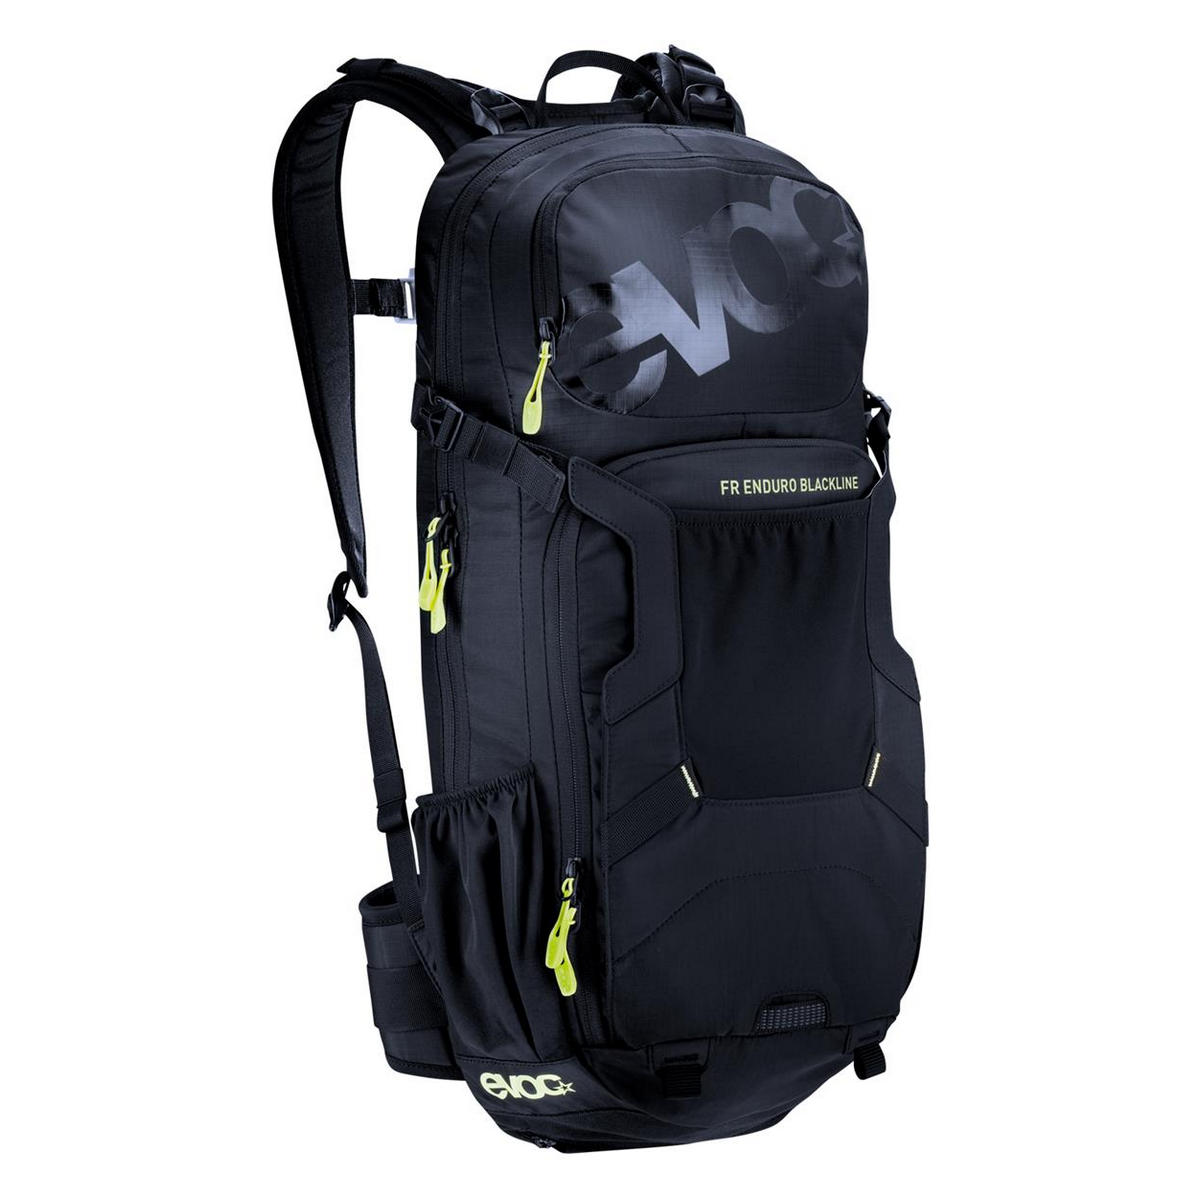 FR enduro blackline backpack 14lt with back protector size S